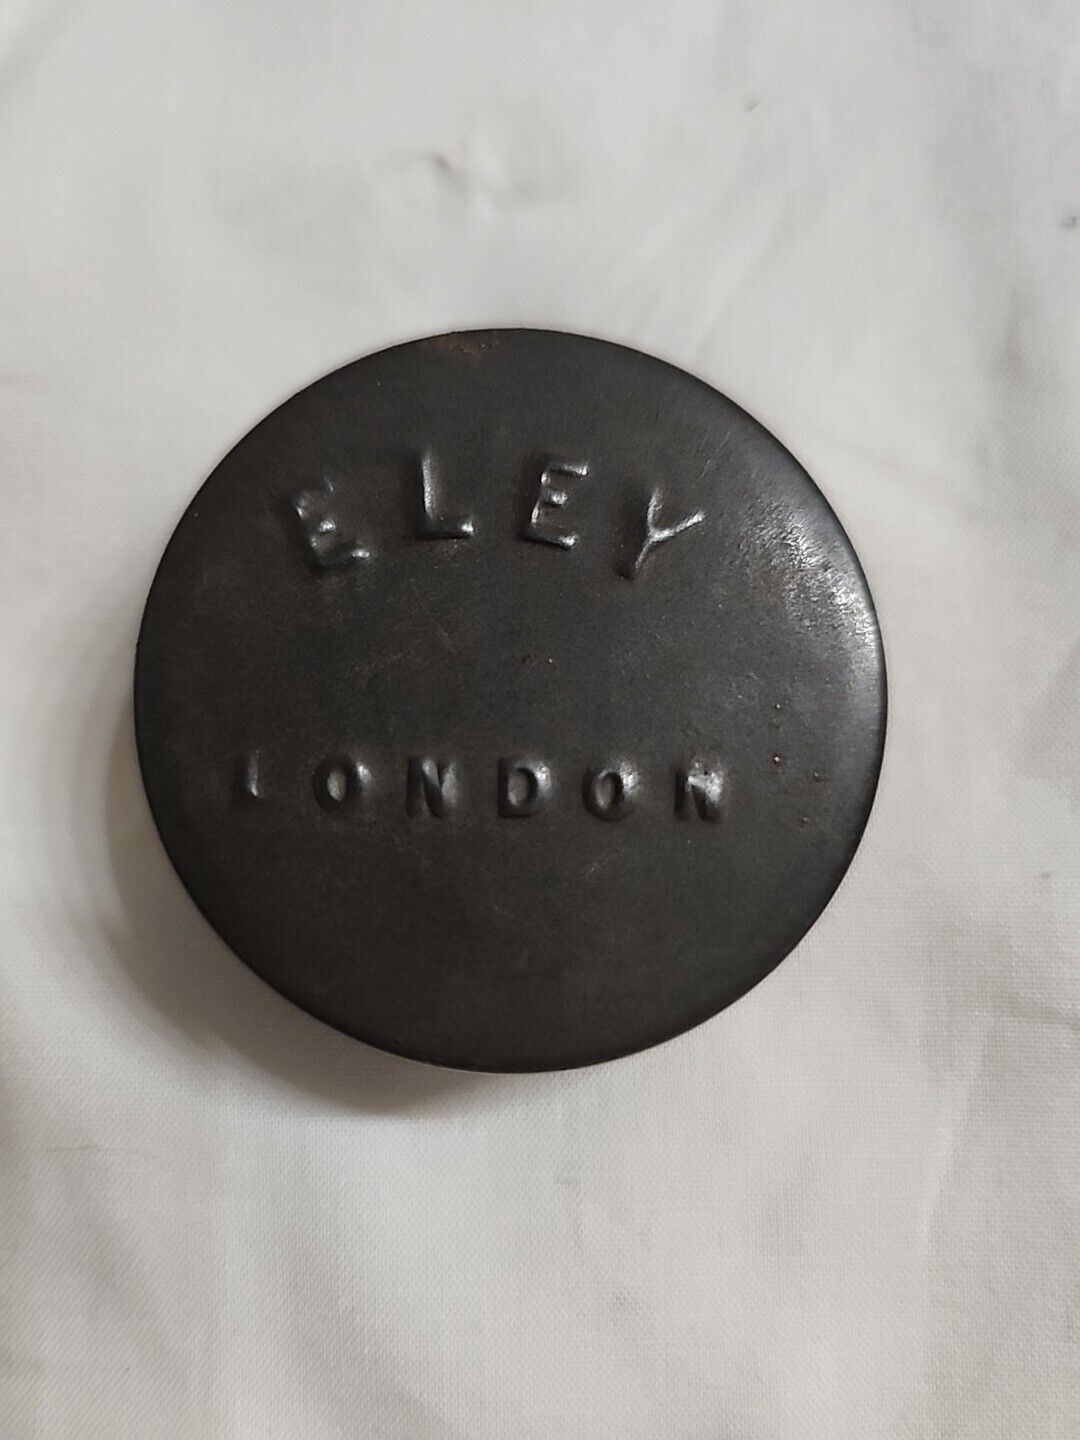 Antique Civil War Era Eley London Percussion Caps Tin Rare 1800s Empty